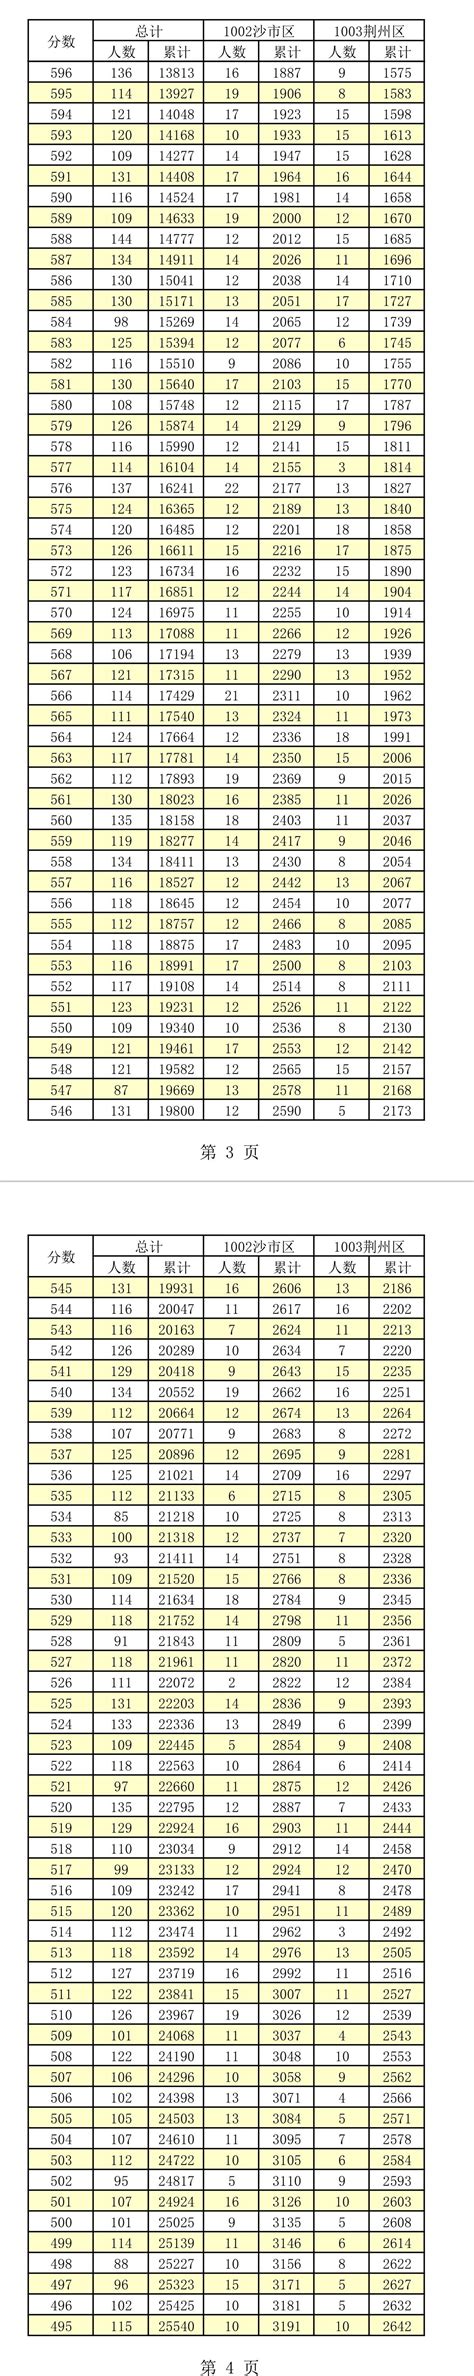 2023年湖北荆州中考分数线已公布